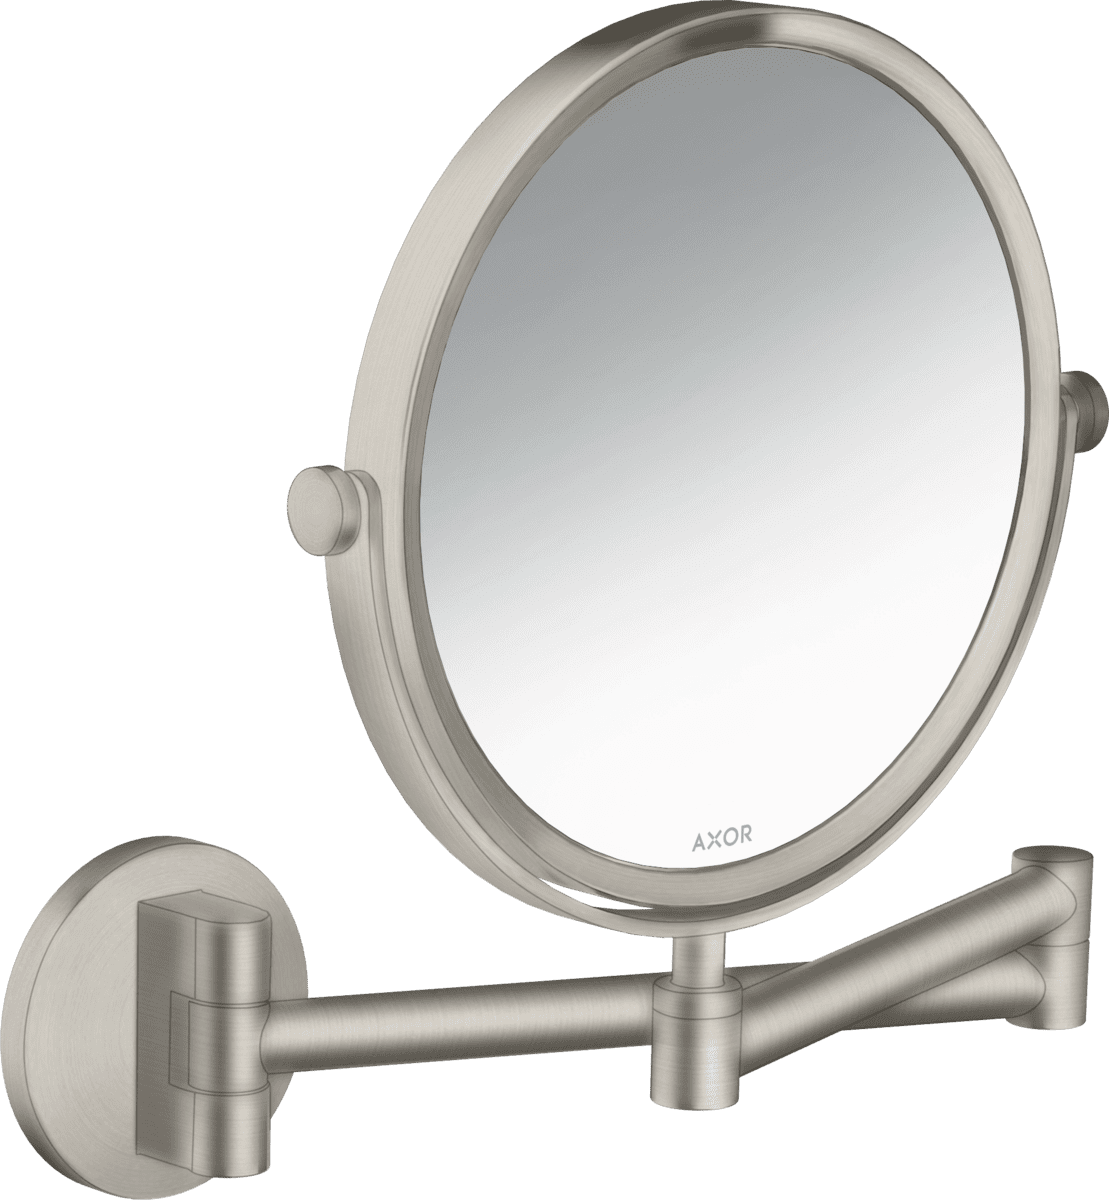 εικόνα του HANSGROHE AXOR Universal Circular Shaving mirror #42849800 - Stainless Steel Optic